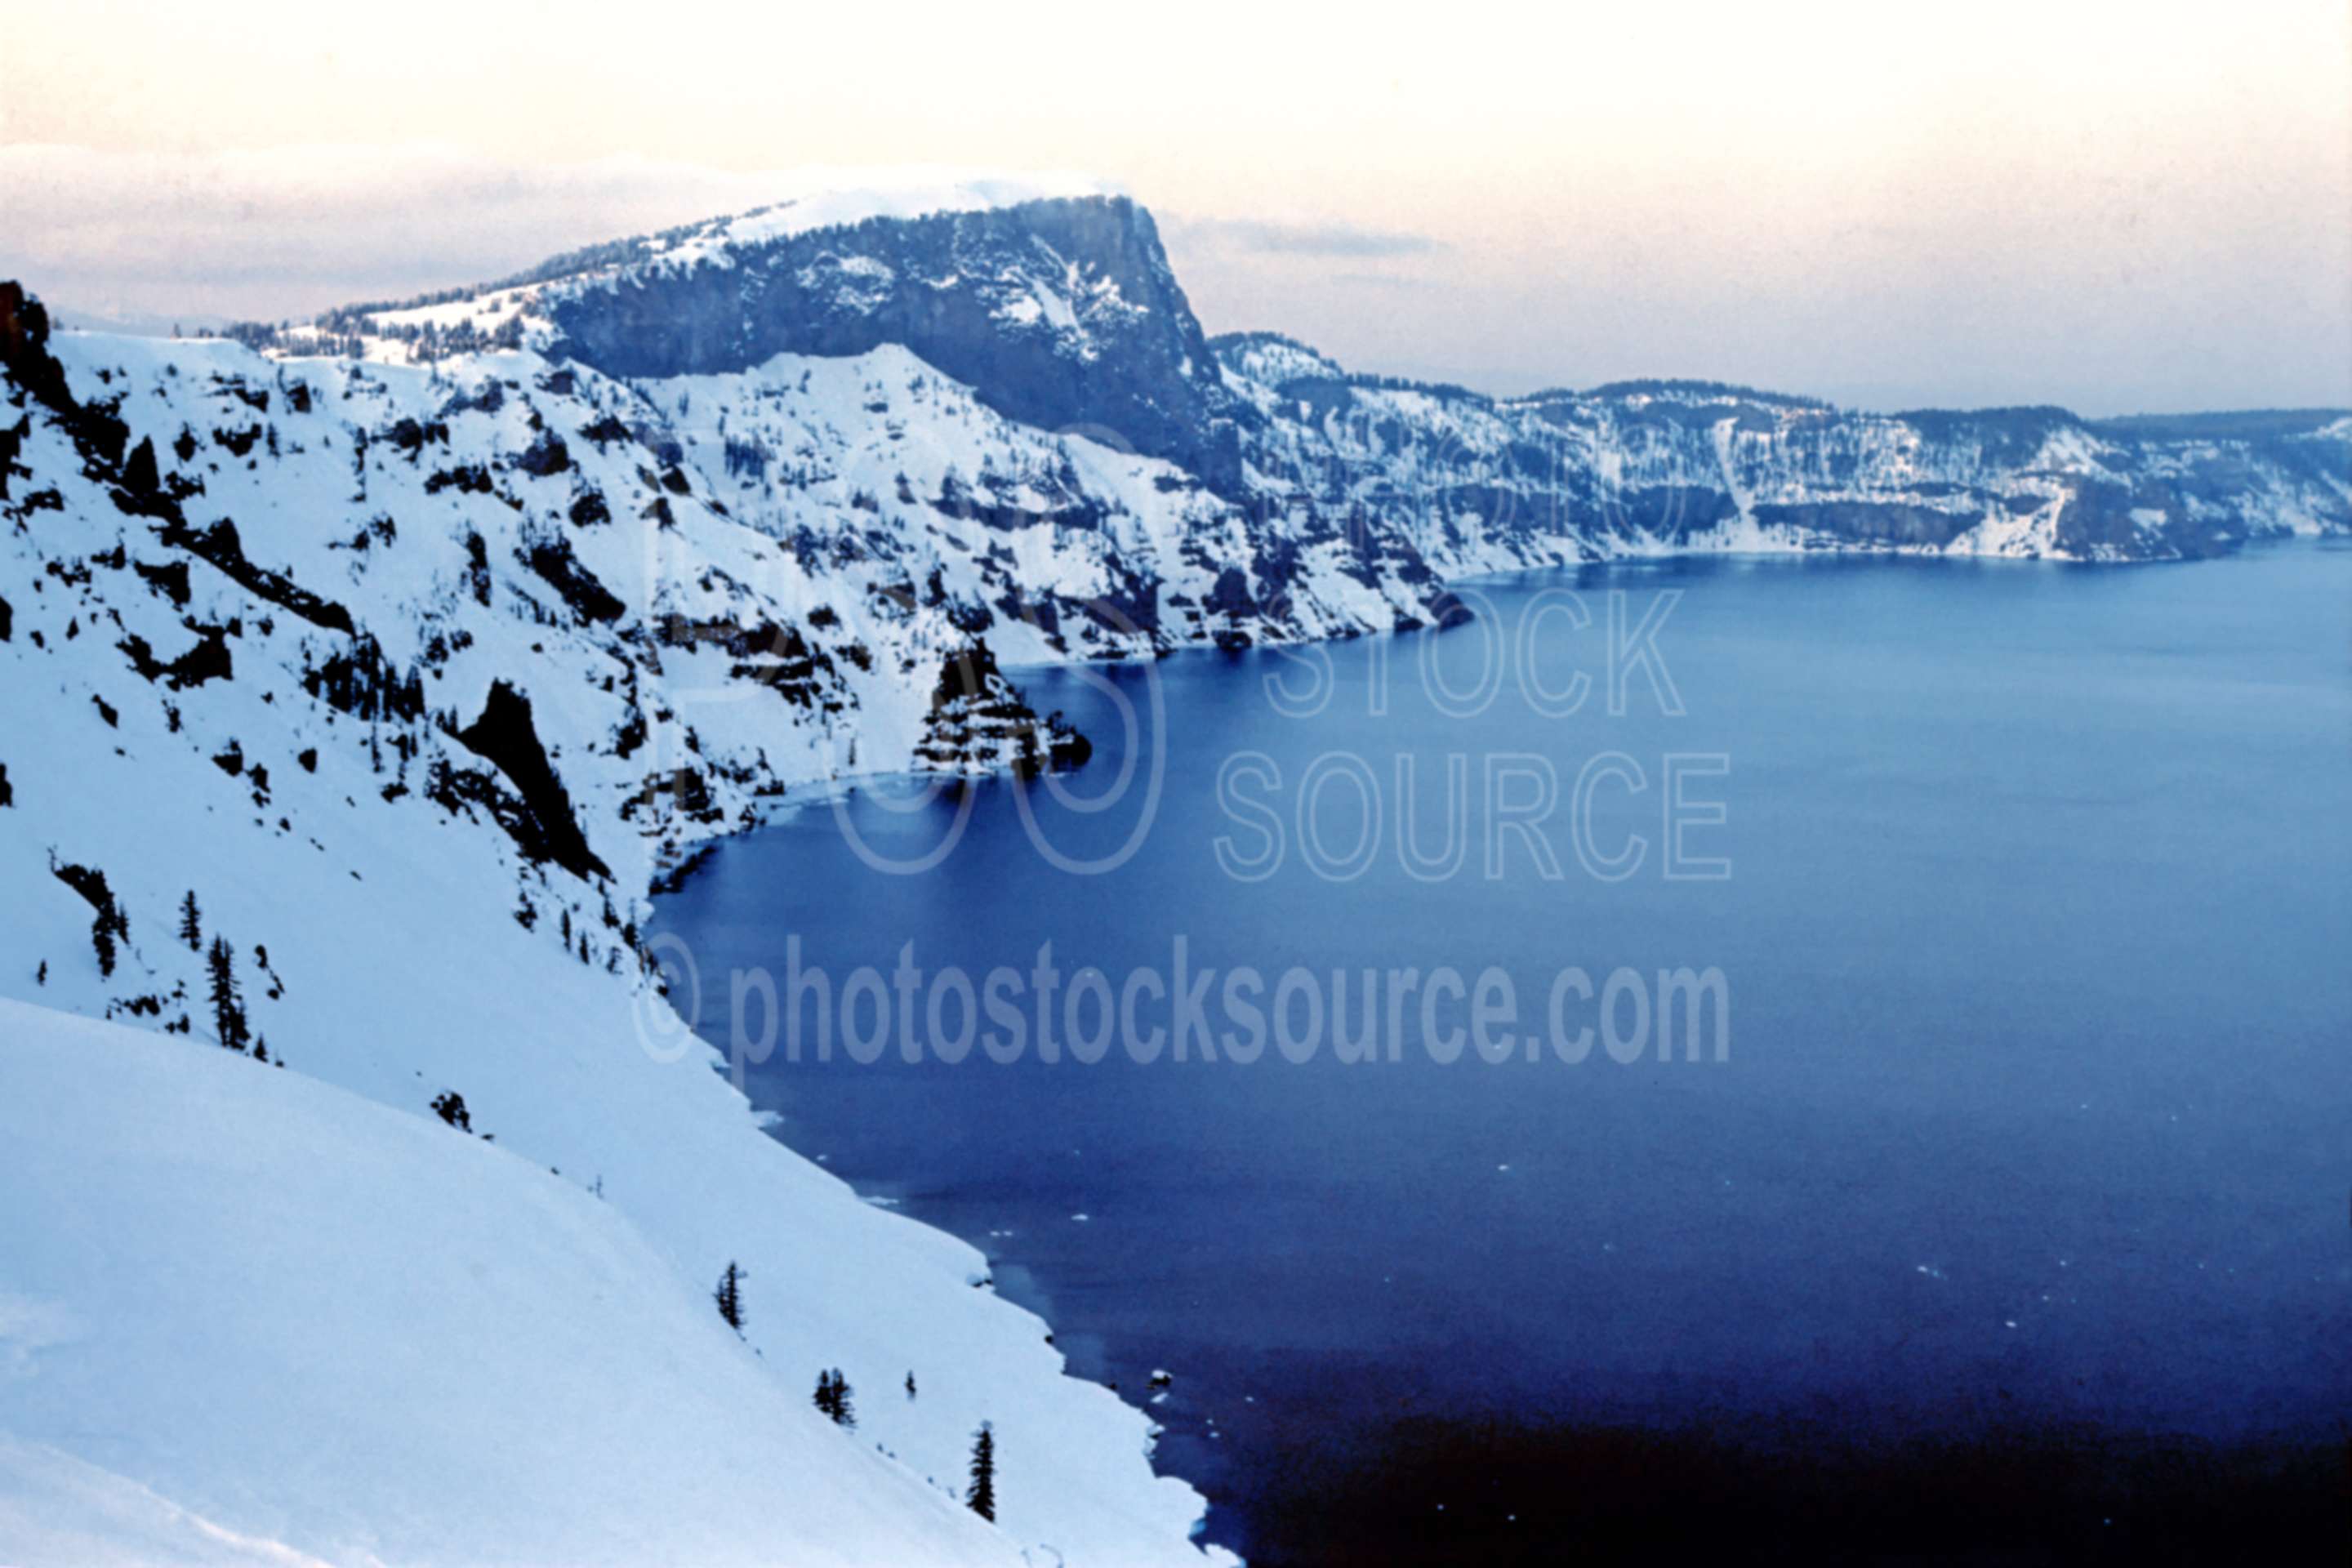 Crater Lake,llao rock,snow,winter,season,usas,lakes rivers,national park,nature